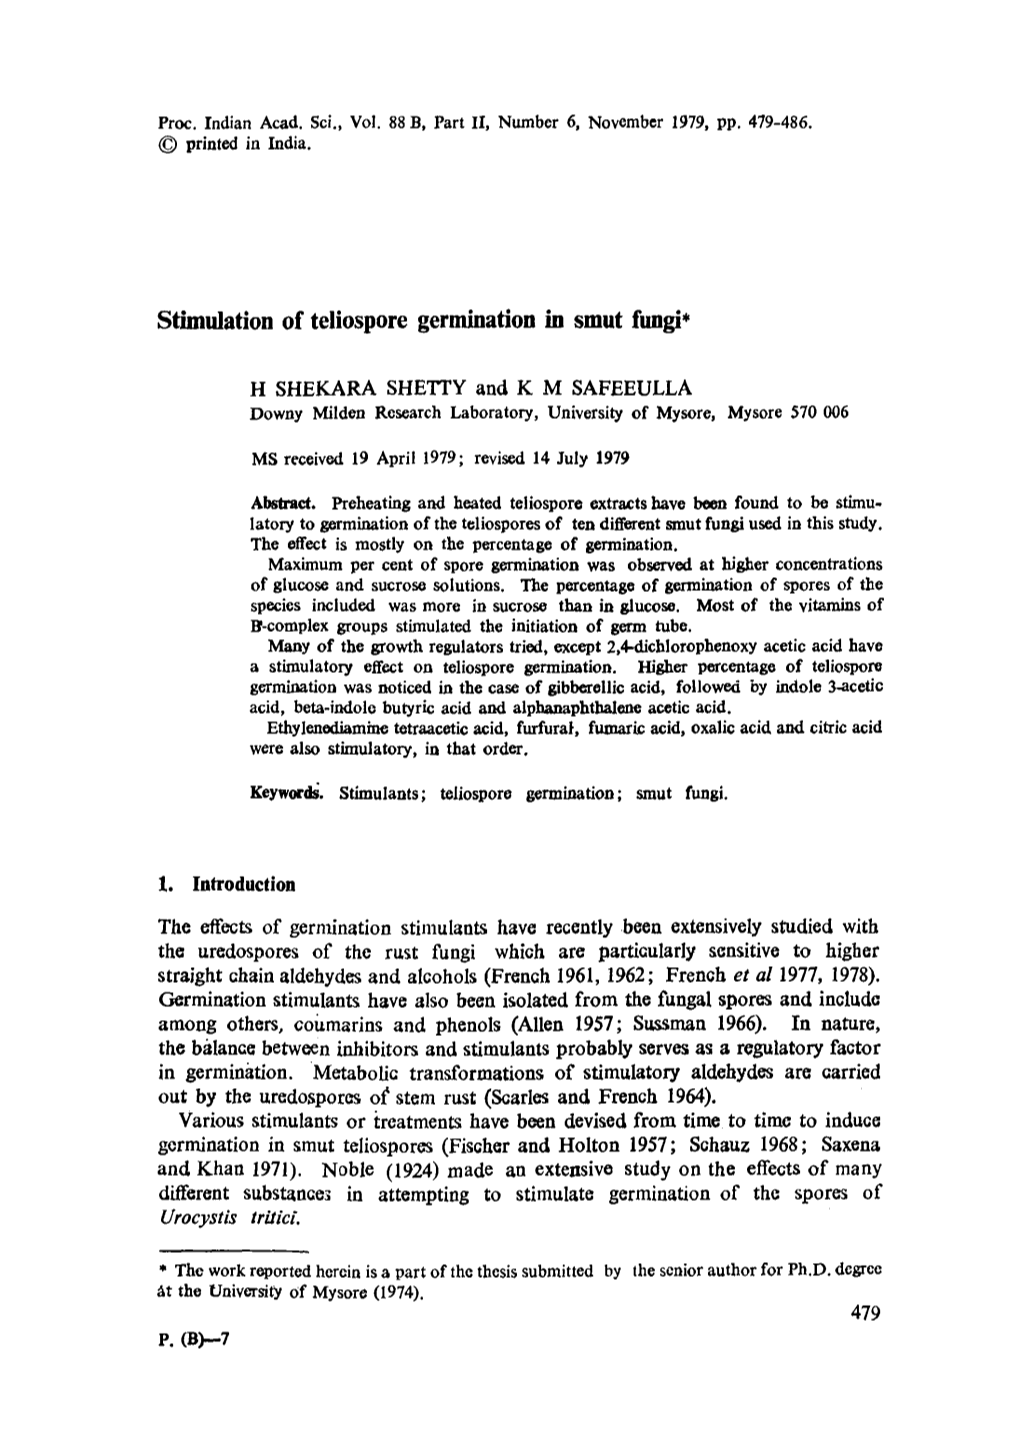 Stimulation of Teliospore Germination in Smut Fungi*